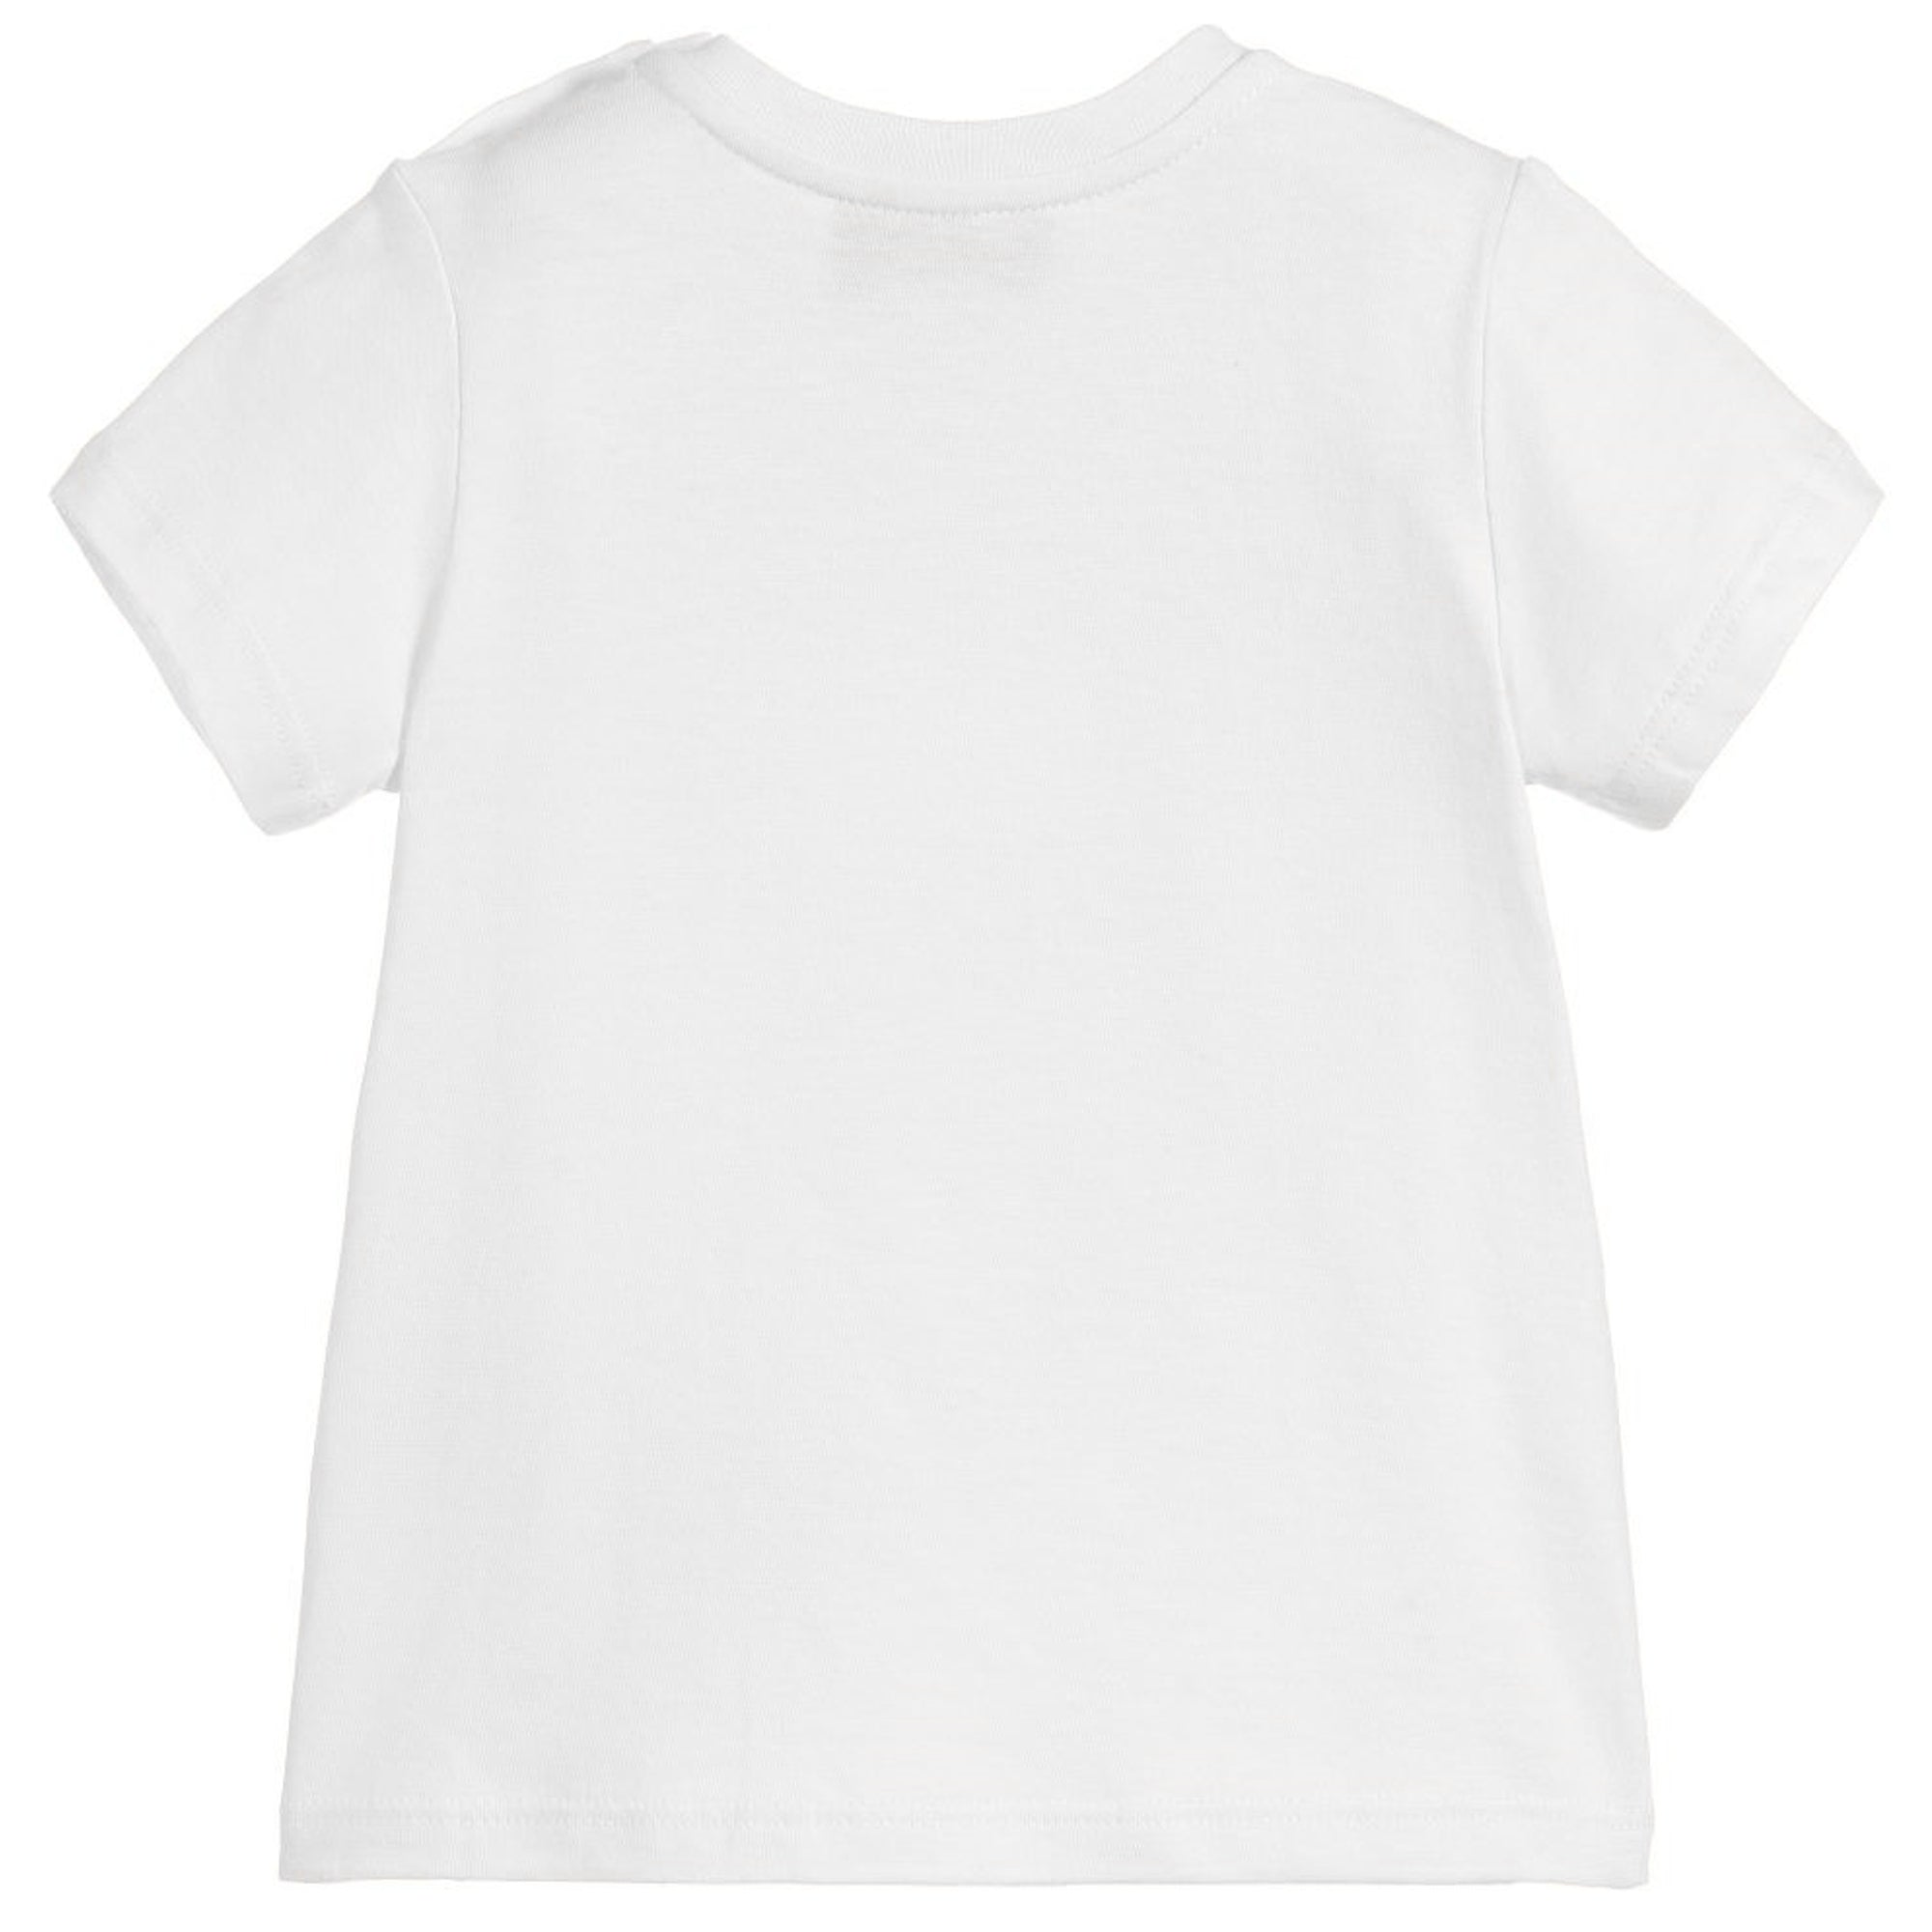 Baby Girls White Cotton T-shirt